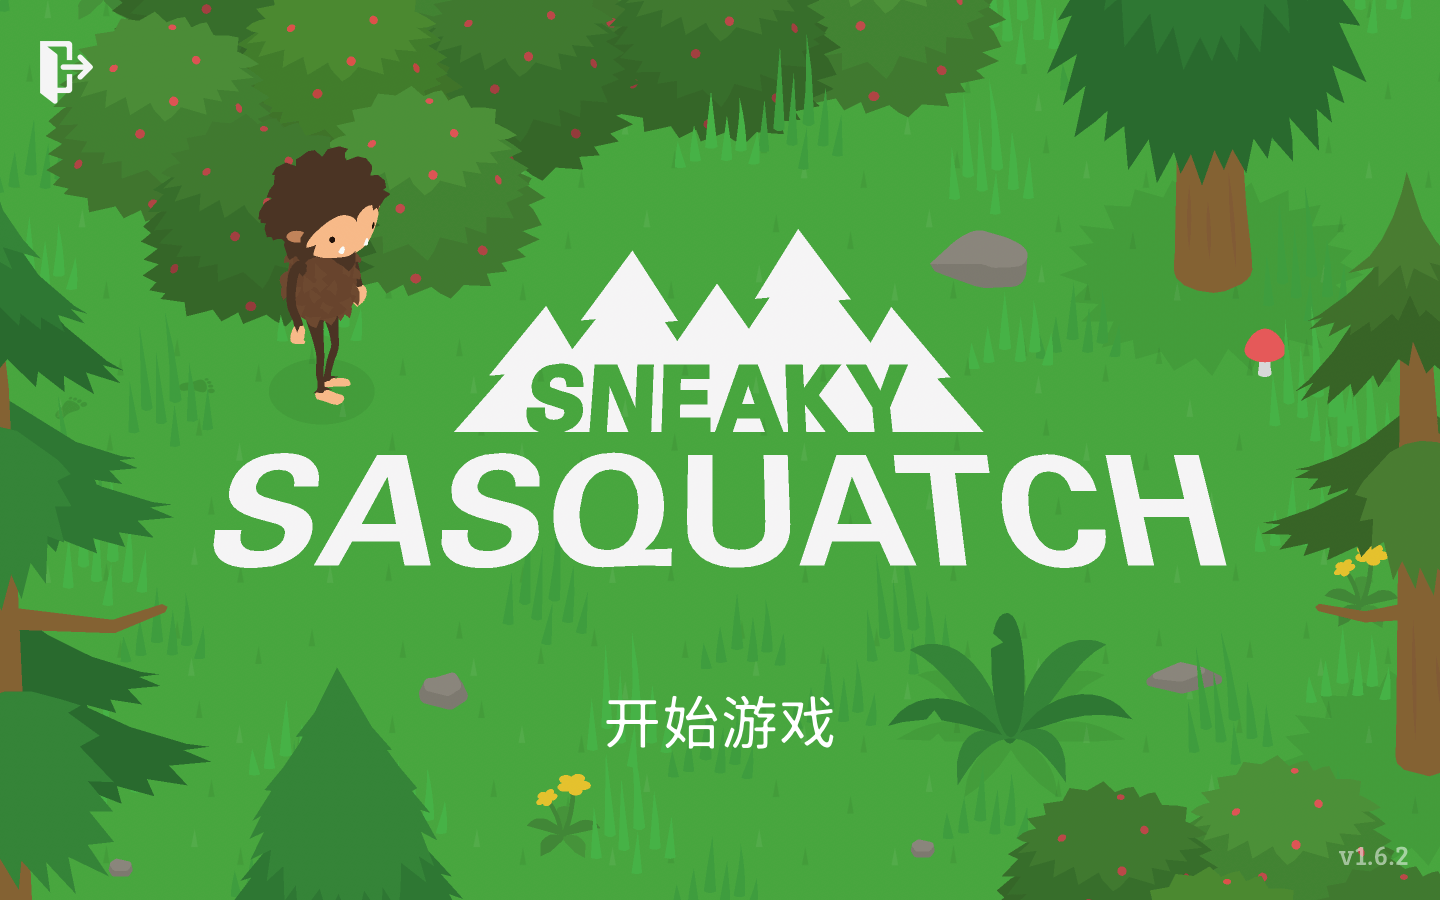 鬼鬼祟祟的大脚怪 Sneaky Sasquatch for Mac v1.9.11 中文原生版-1